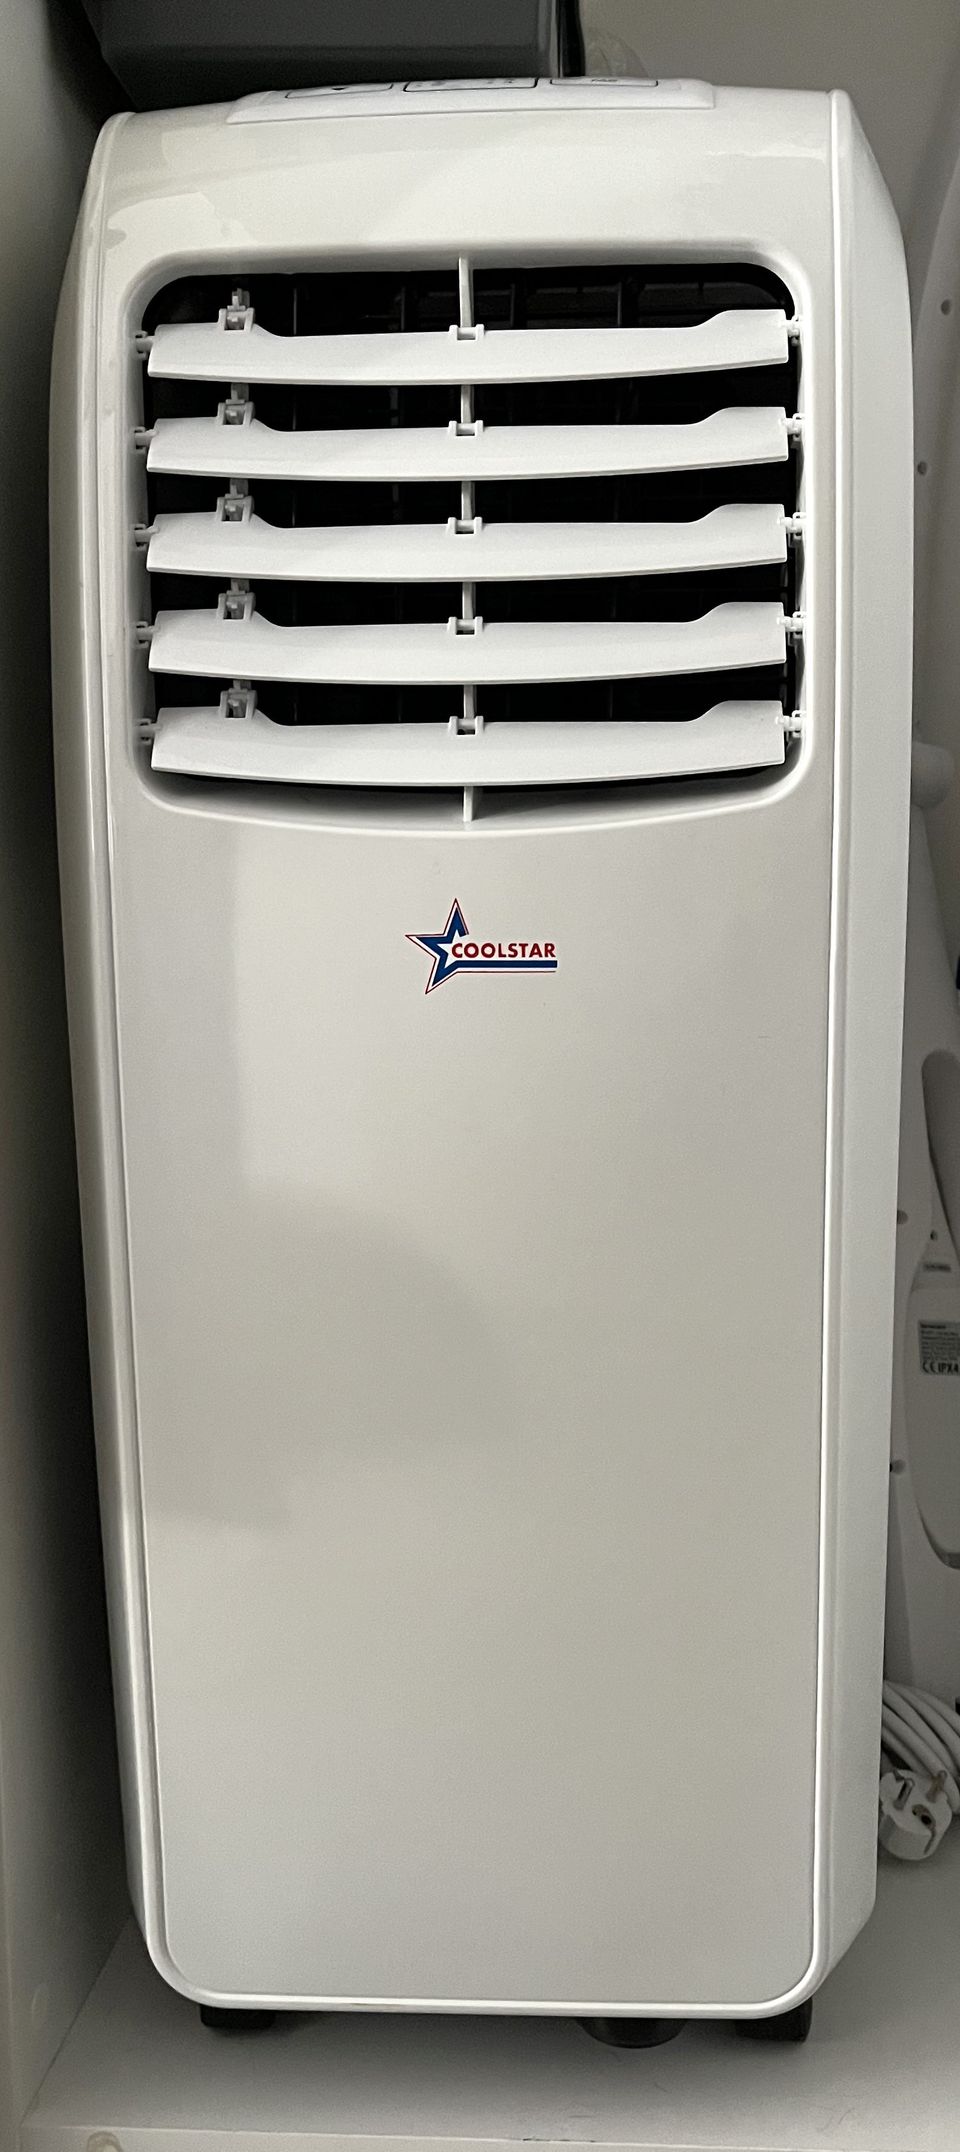 Siirrettävä ilmastointilaite COOLSTAR energia A-luokka